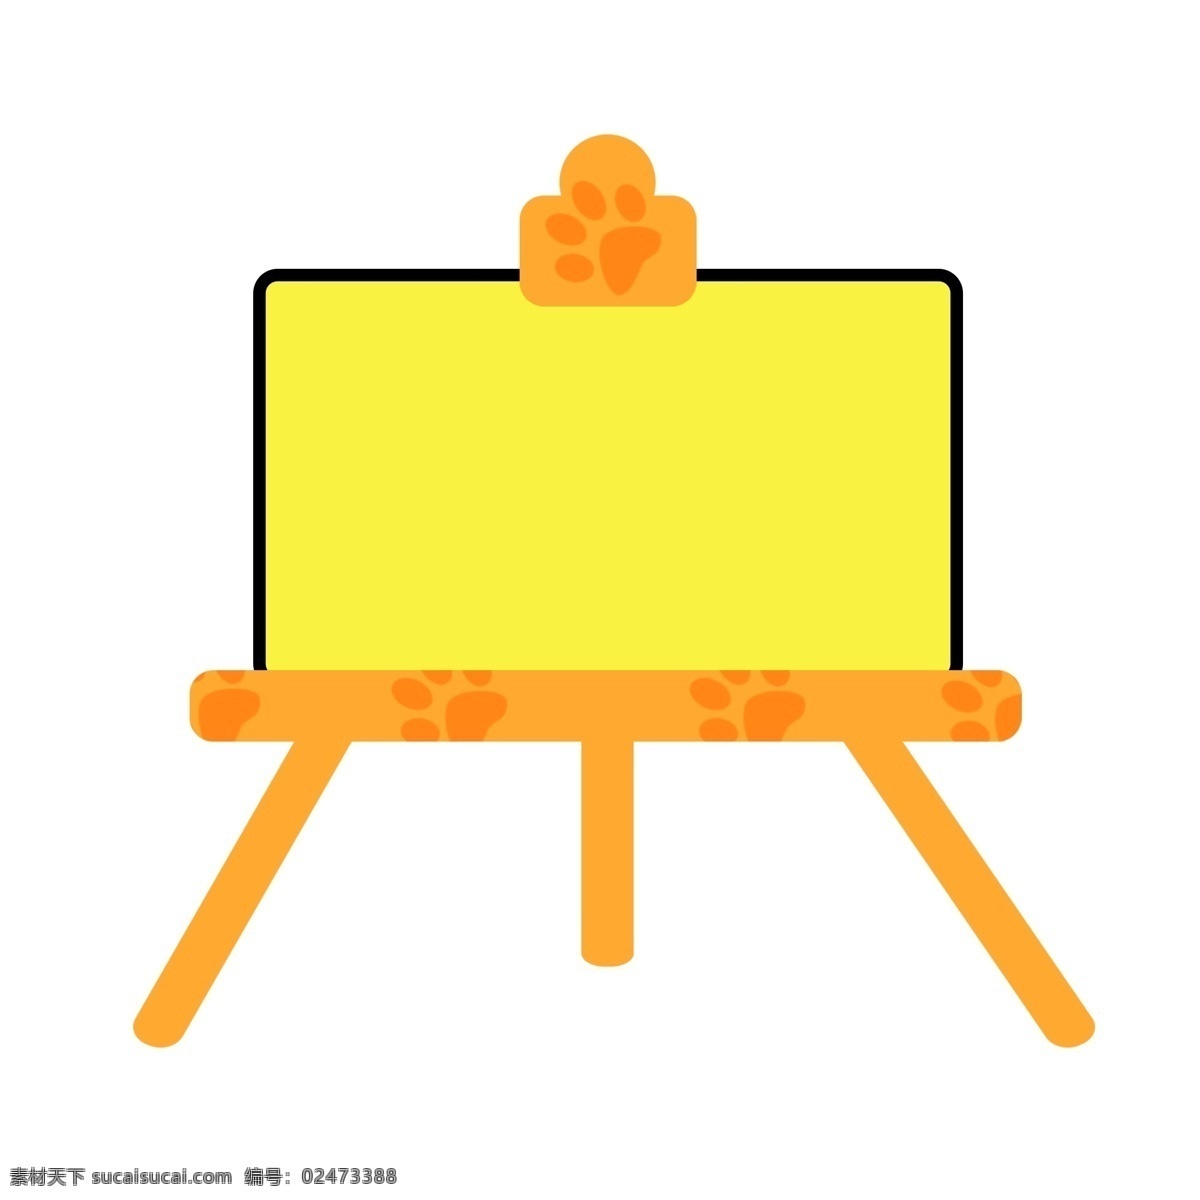 儿童用品 黑板 插画 卡通插画 儿童用品插画 手绘黑板插画 黄色的题板 棕色的脚印 黄色的三脚架